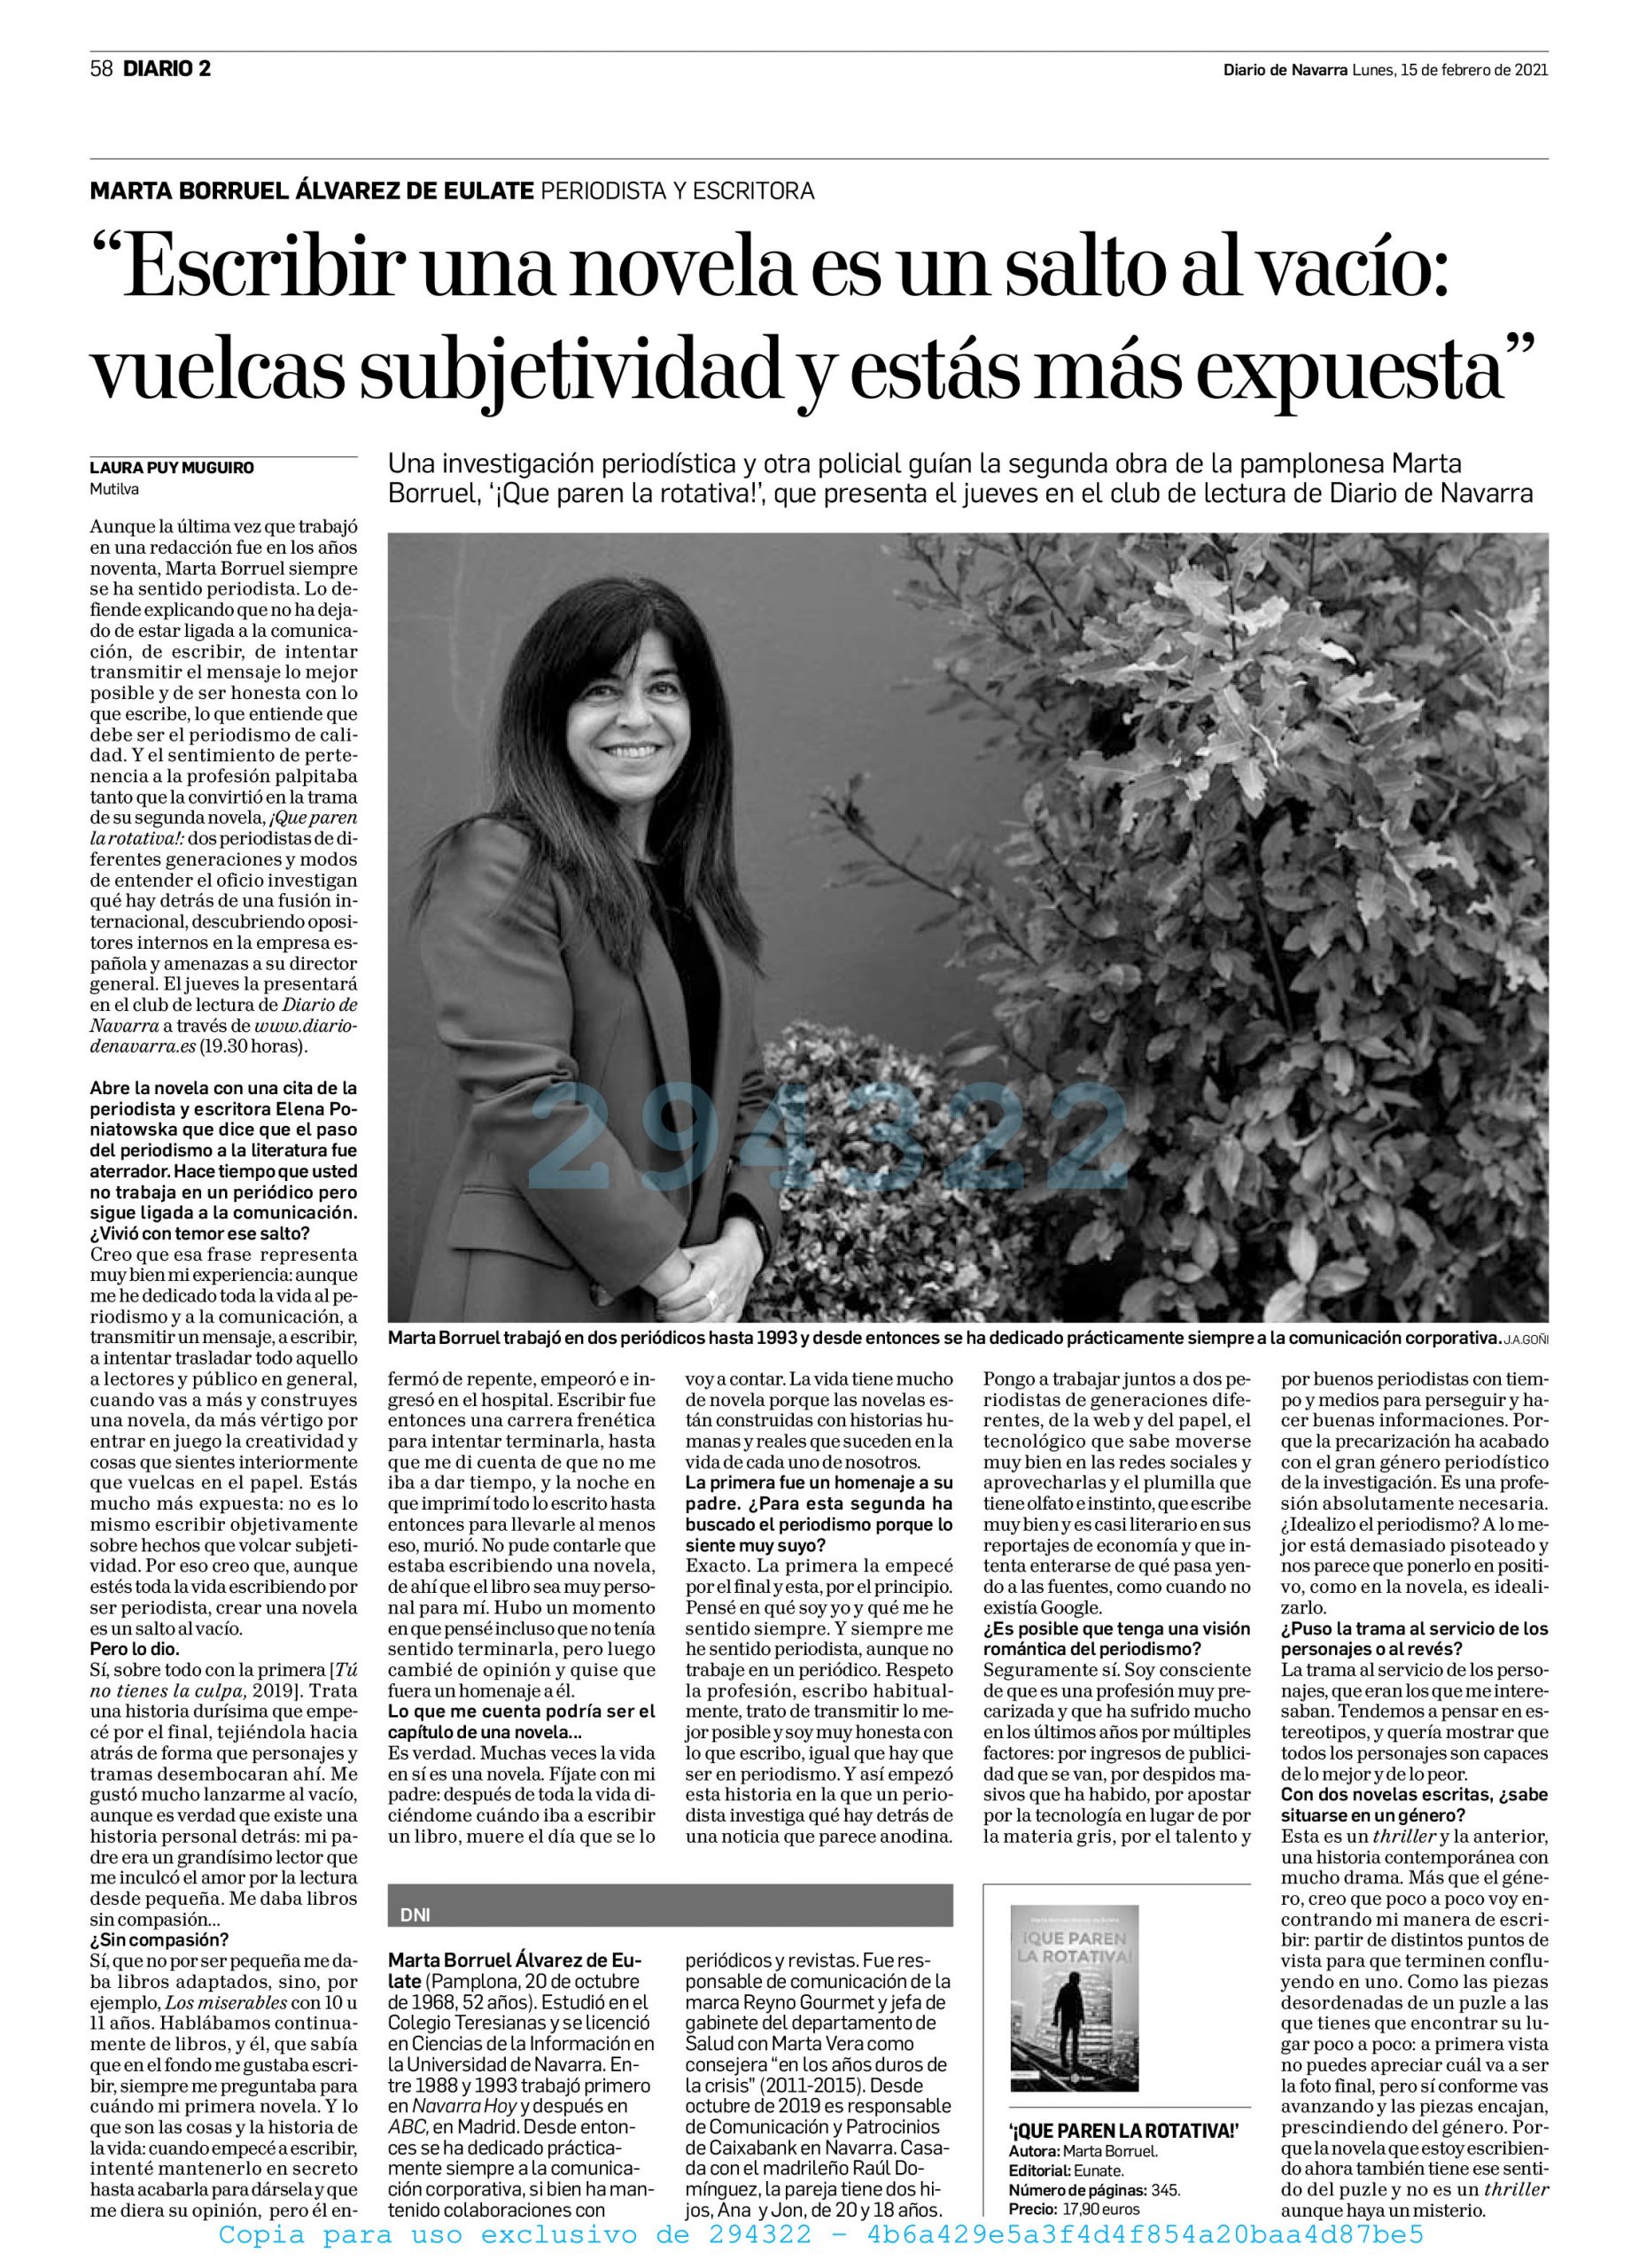 Entrevista Diario de Navarra